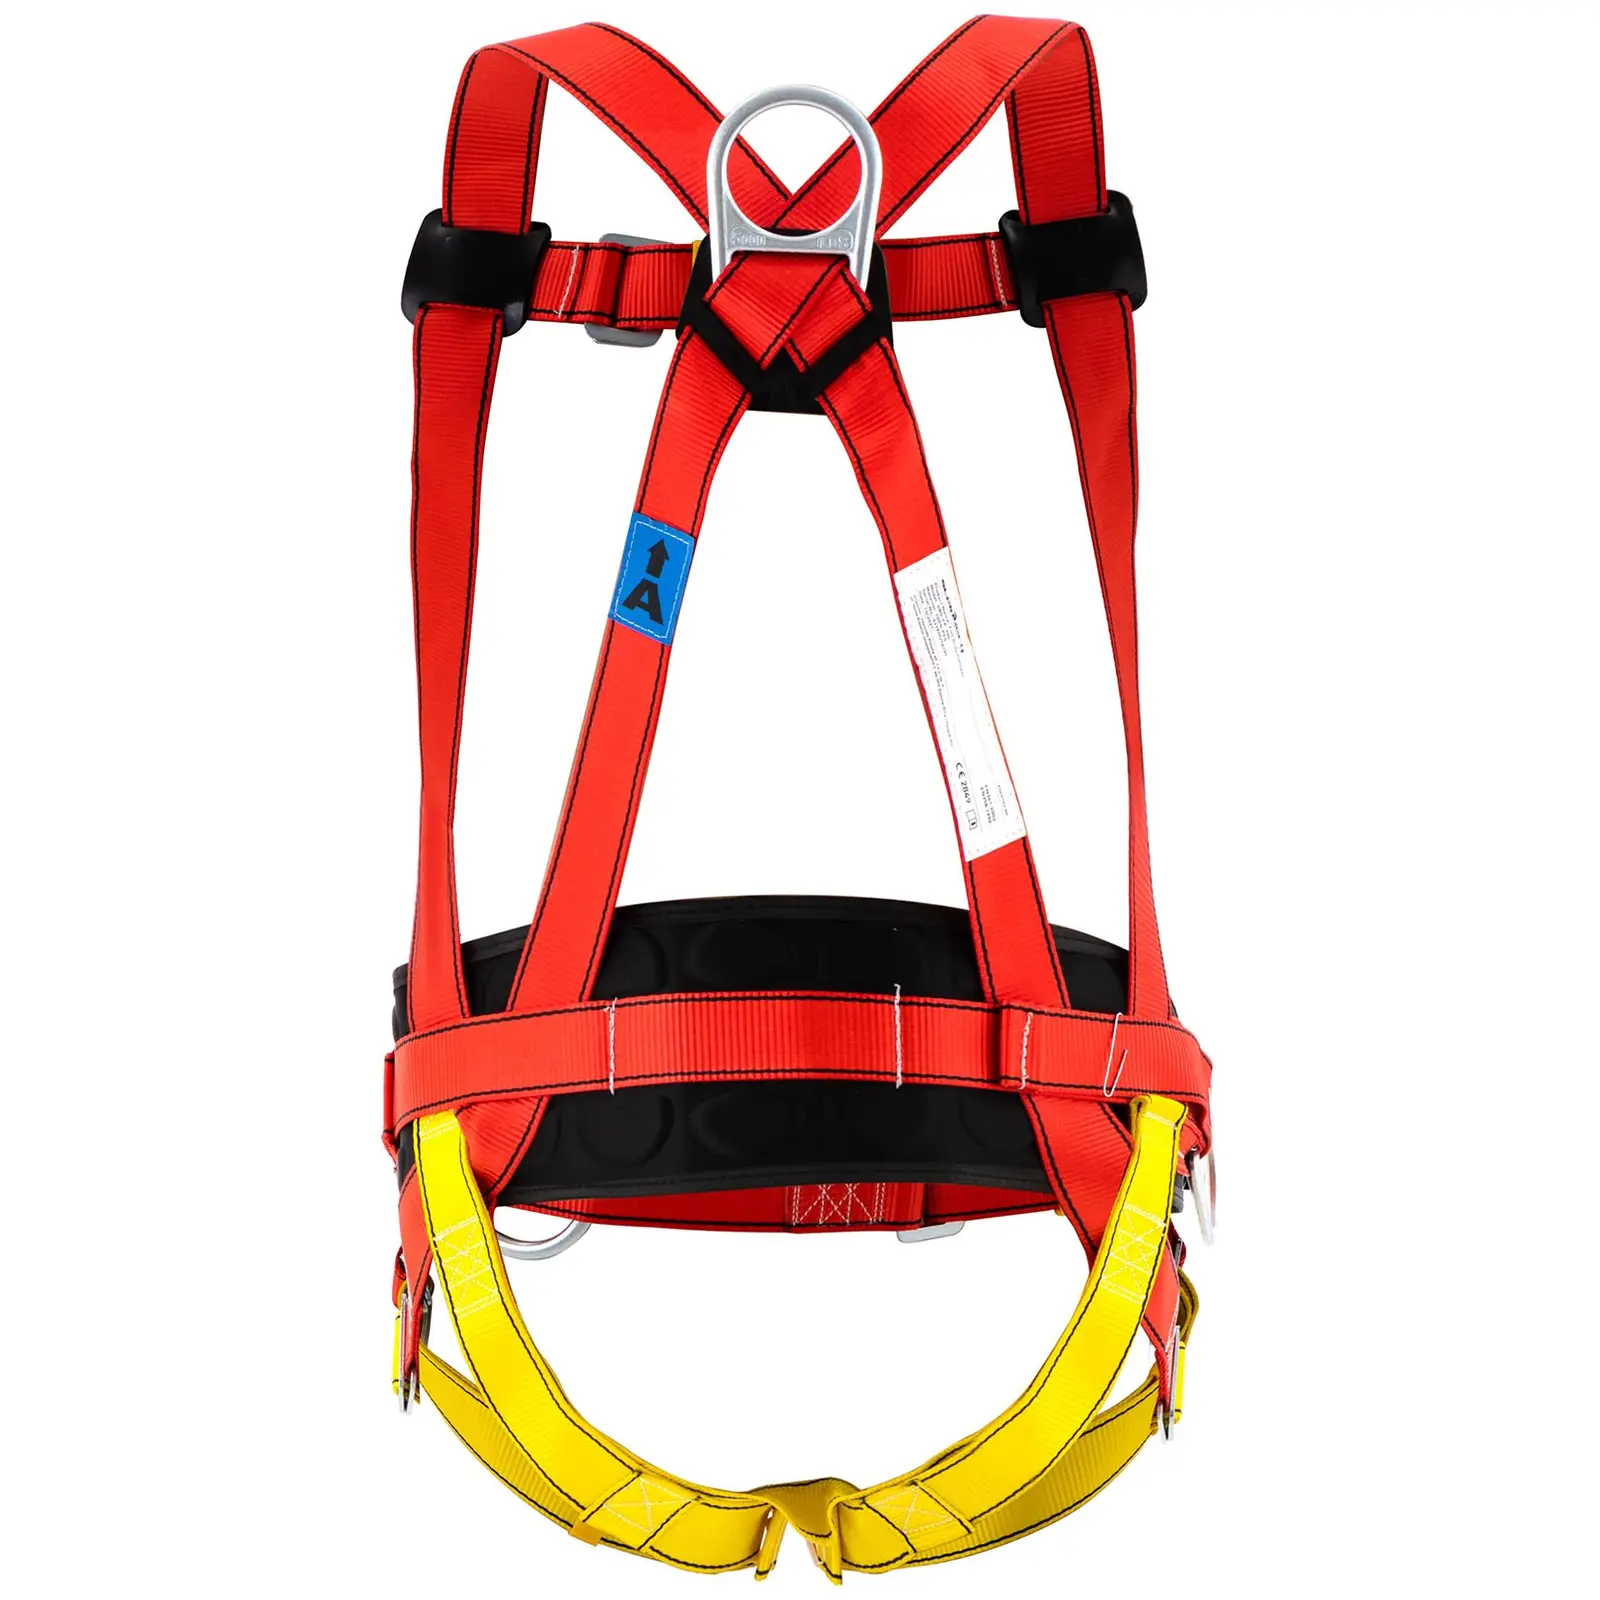 Safety Harness - 100 kg - 2 D-ring anchor points - EN361:2002 and EN358:1999